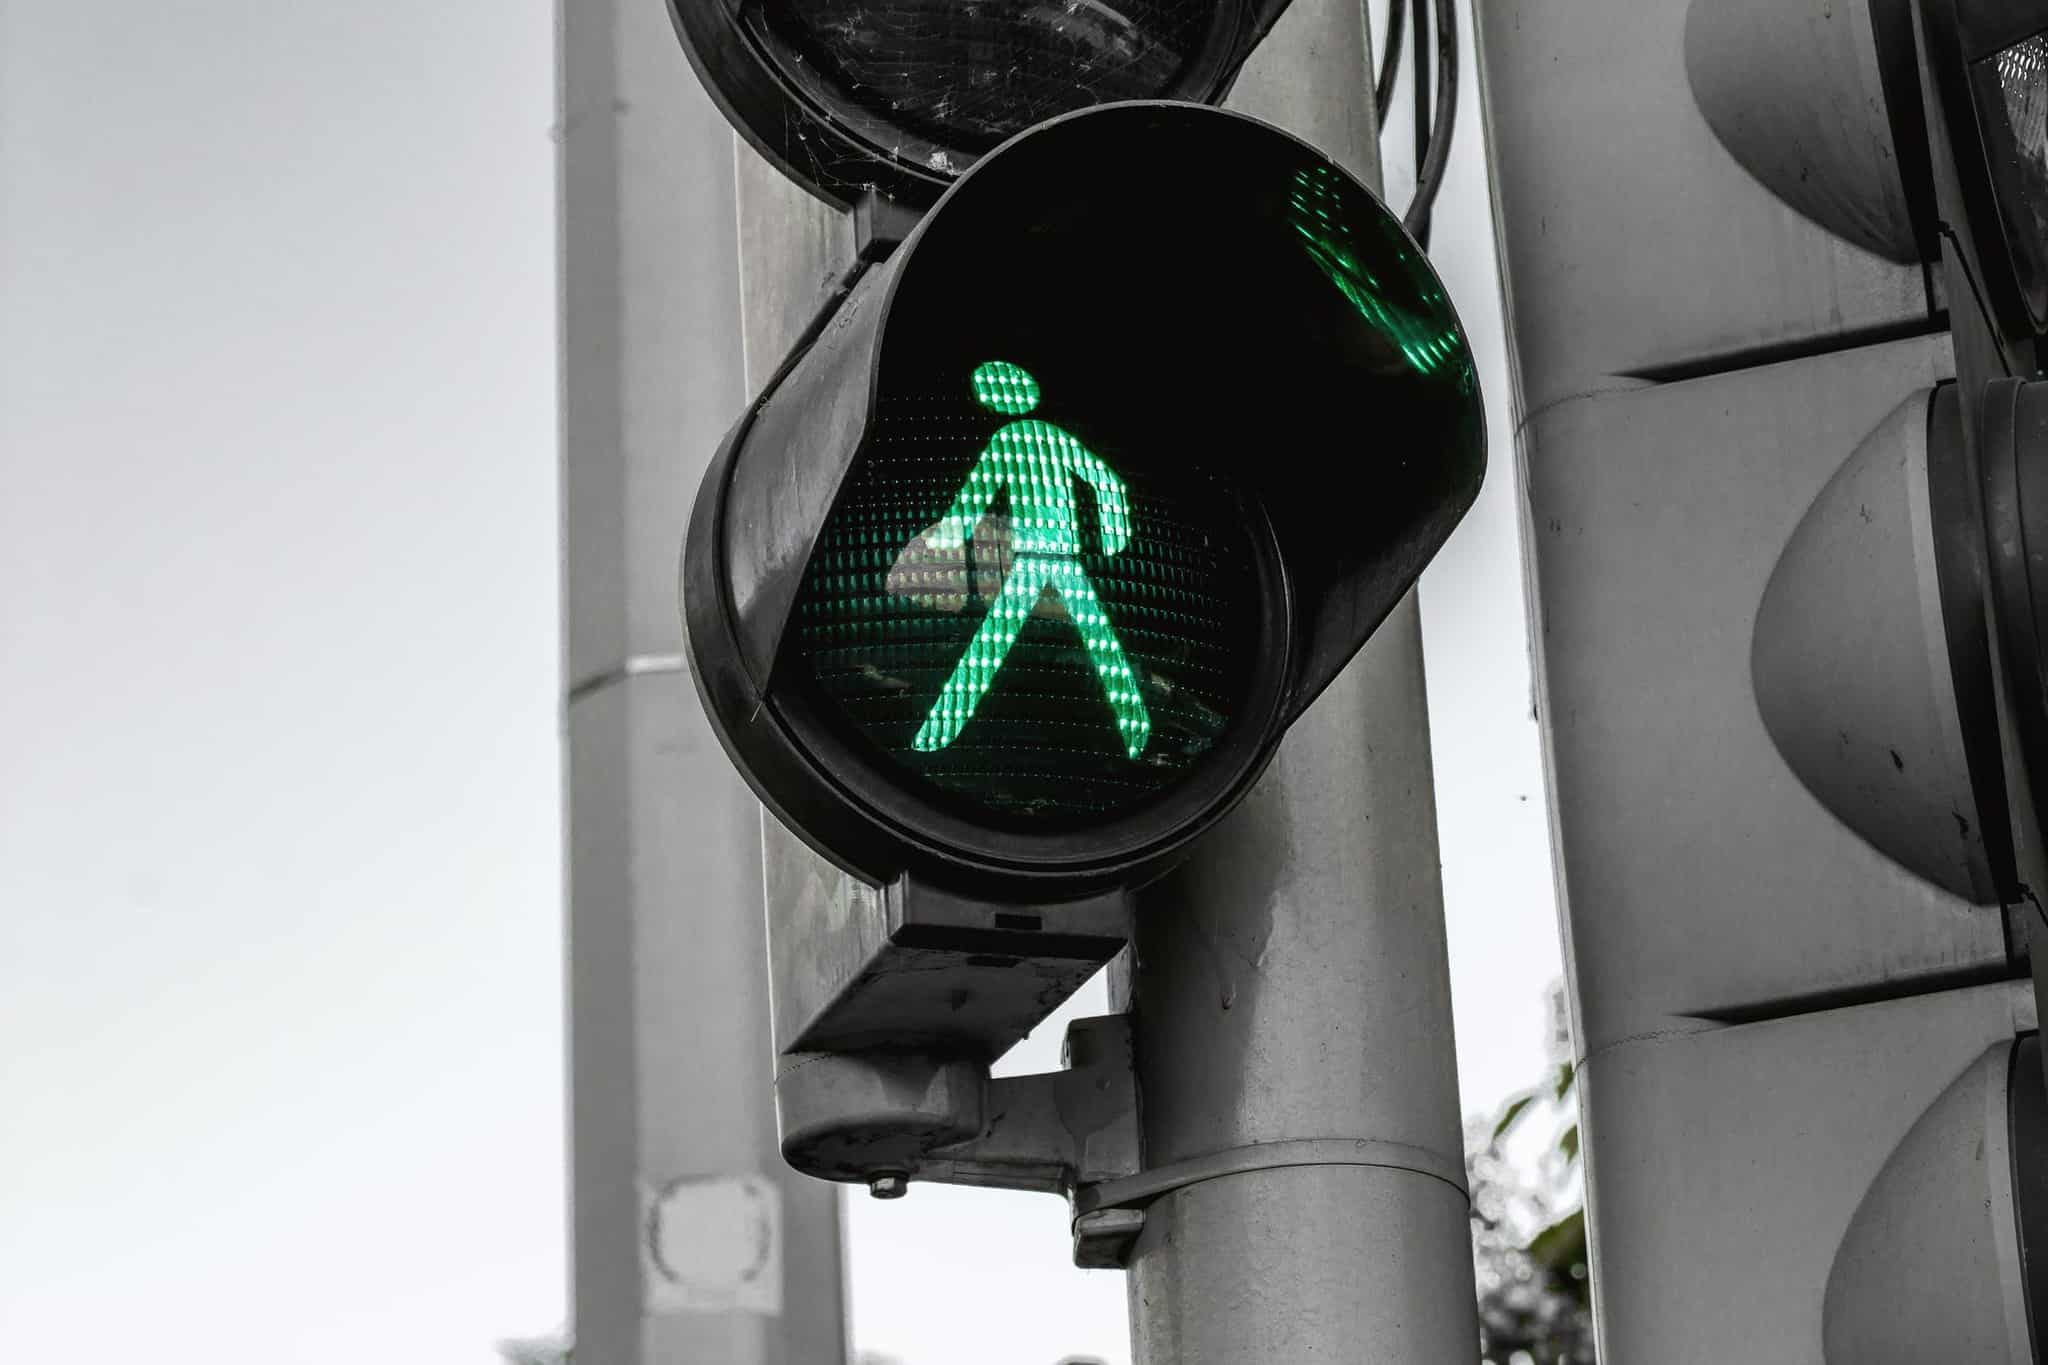 pedestrian walk symbol lit up in green